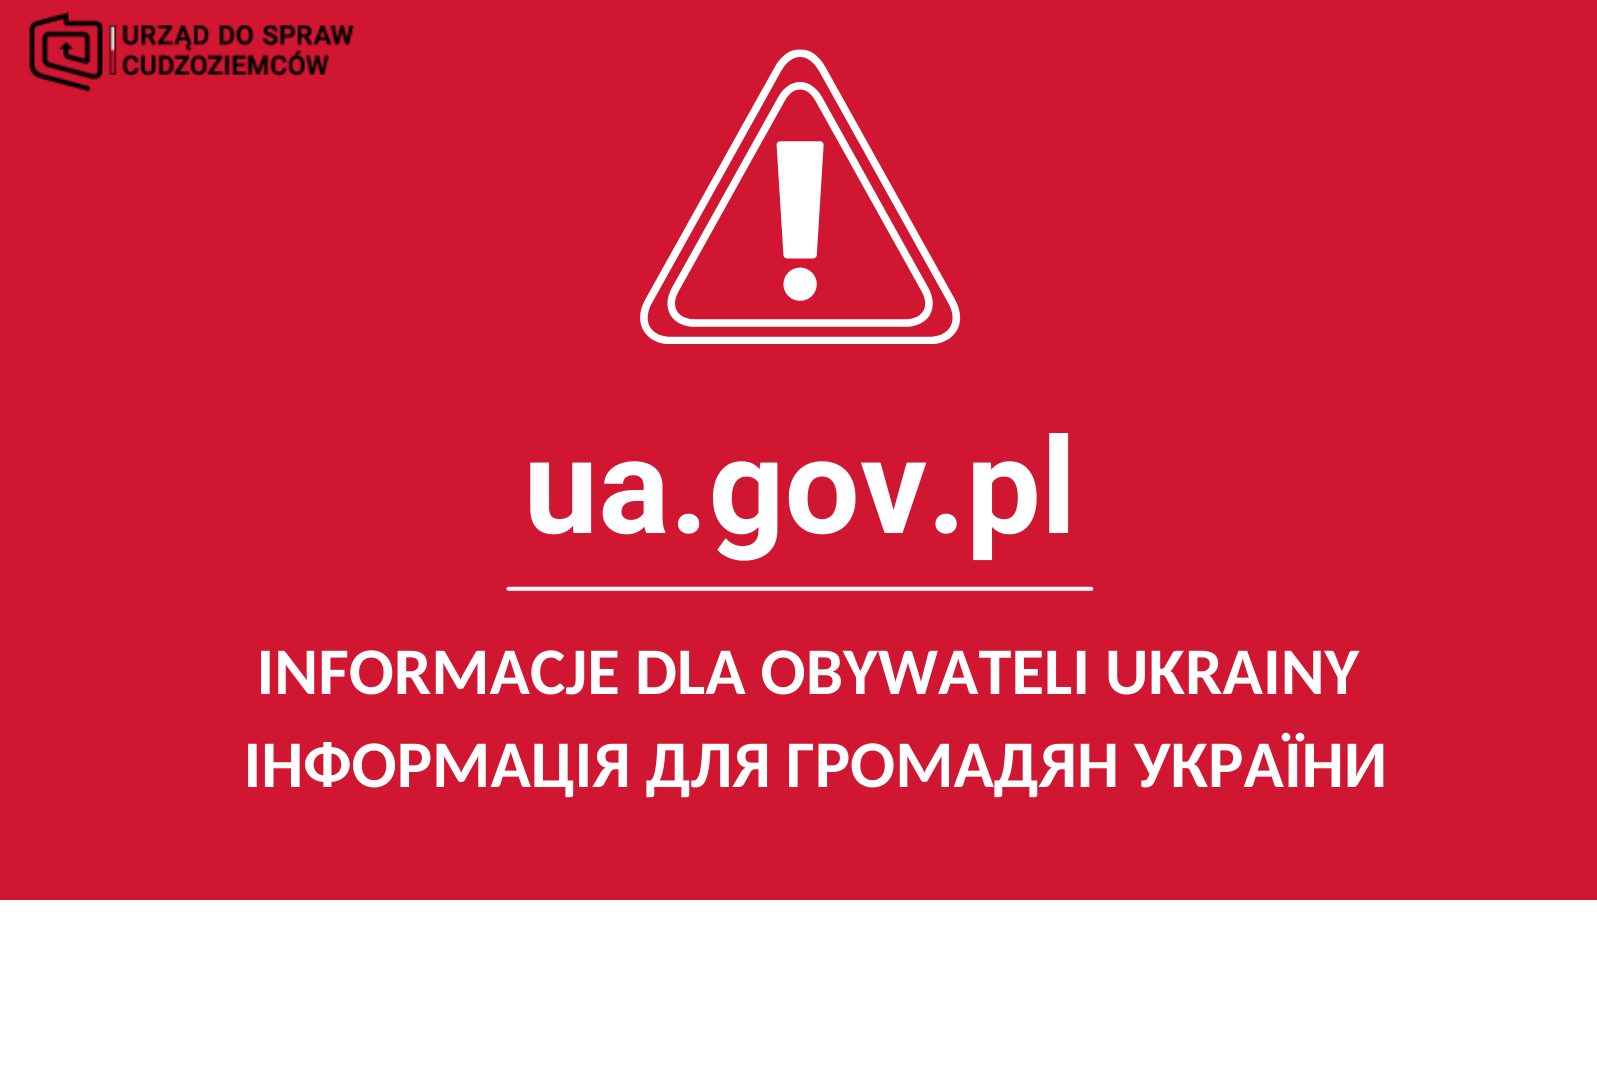 awatar z napisem ua.gov.pl